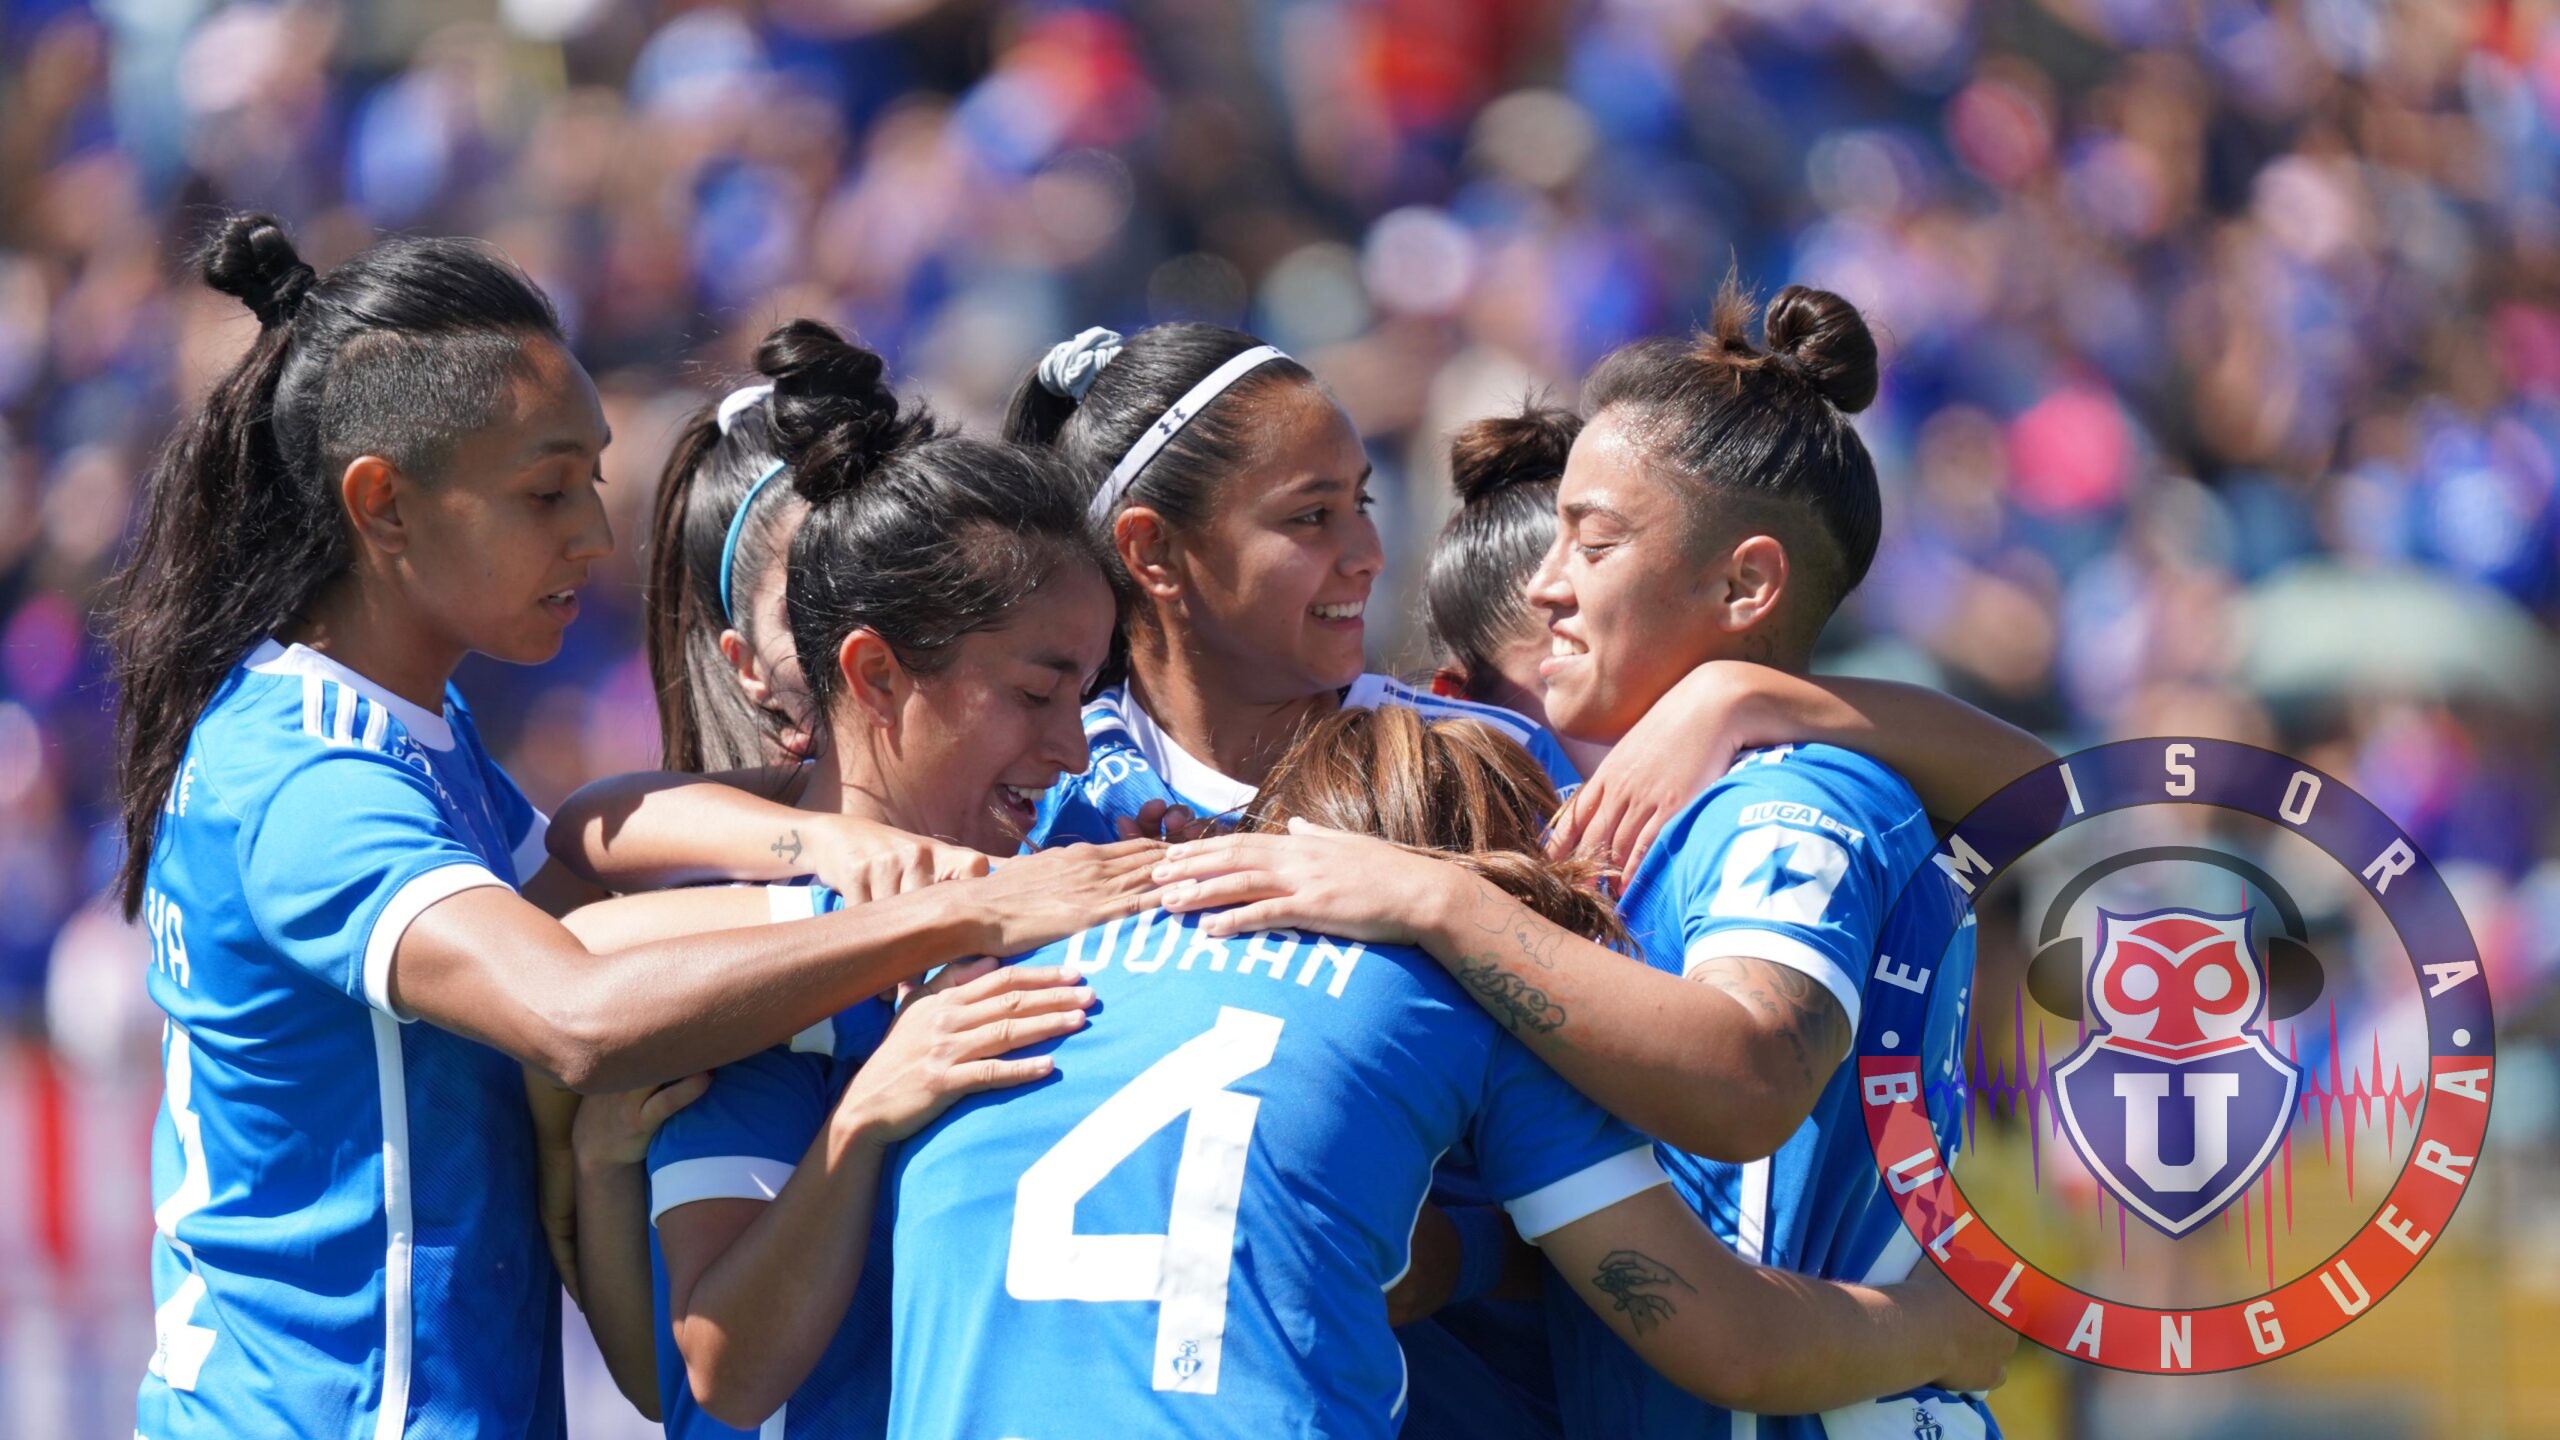 La U femenina vence a Coquimbo Unido y se alista para el Superclásico